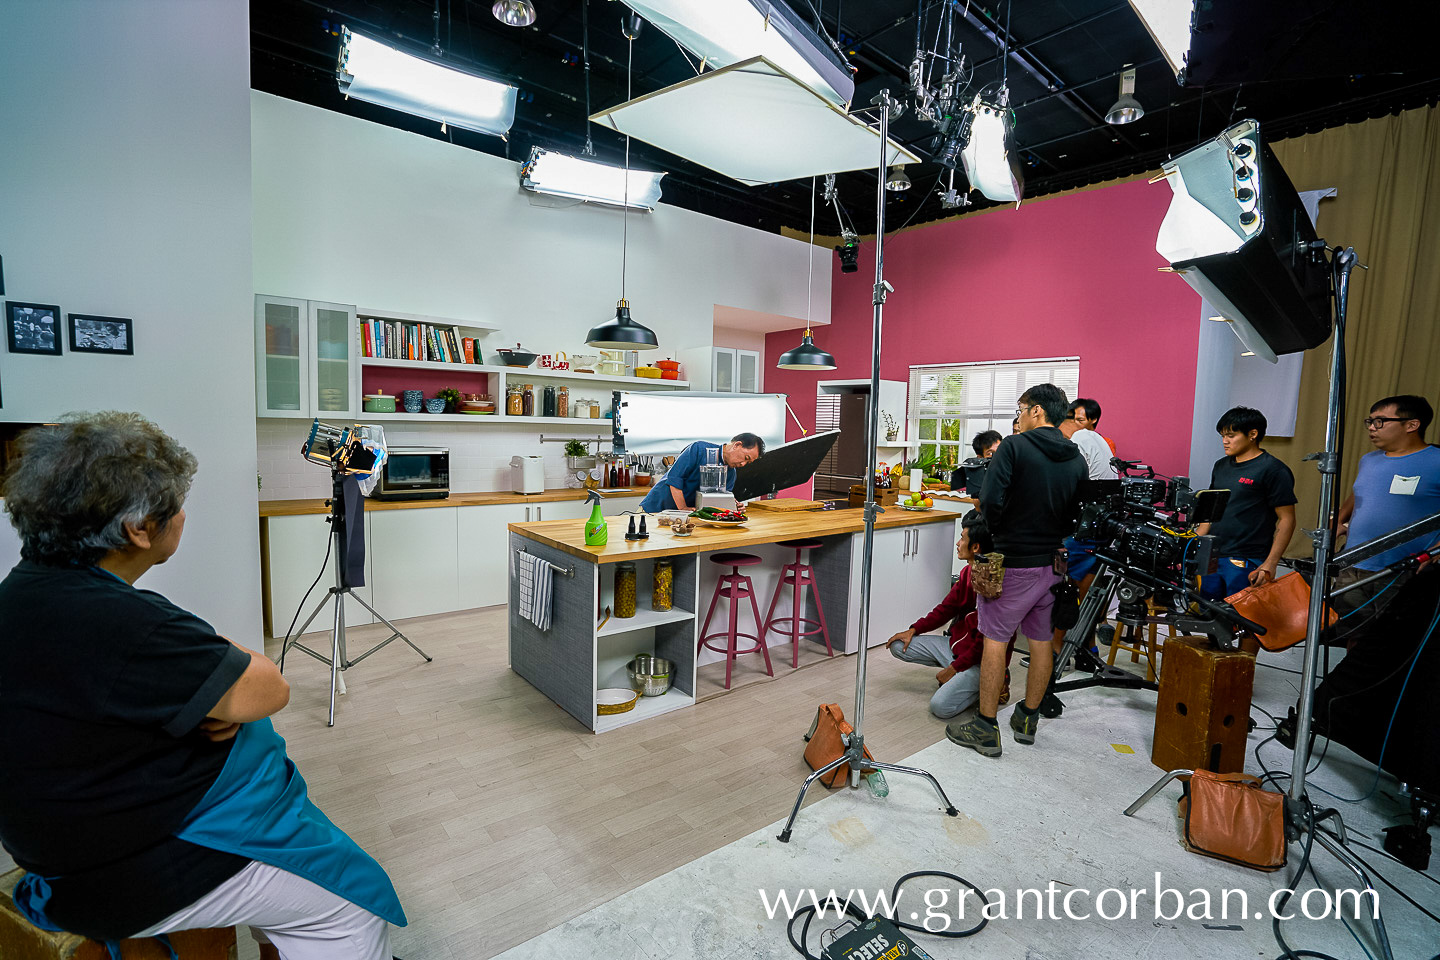 behind the scenes tv show crew